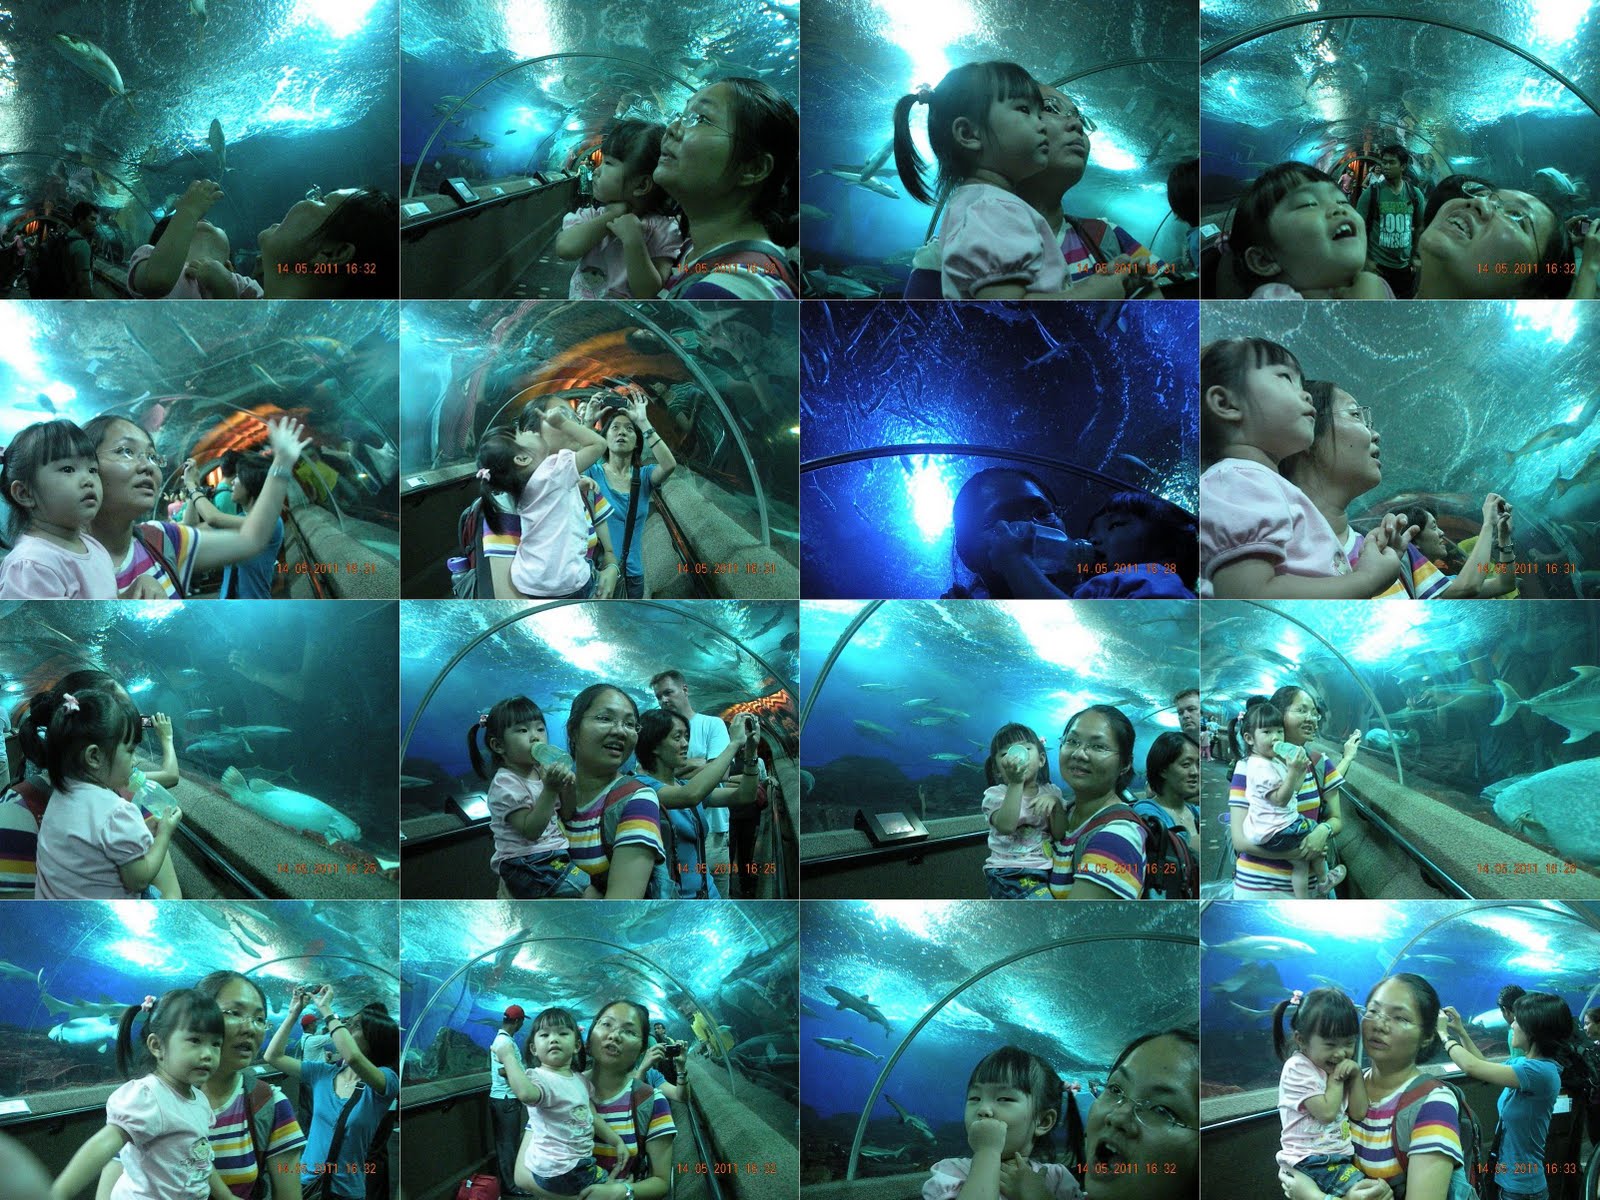 Xin Ying - My baby: Singapore Sentosa Underwater World